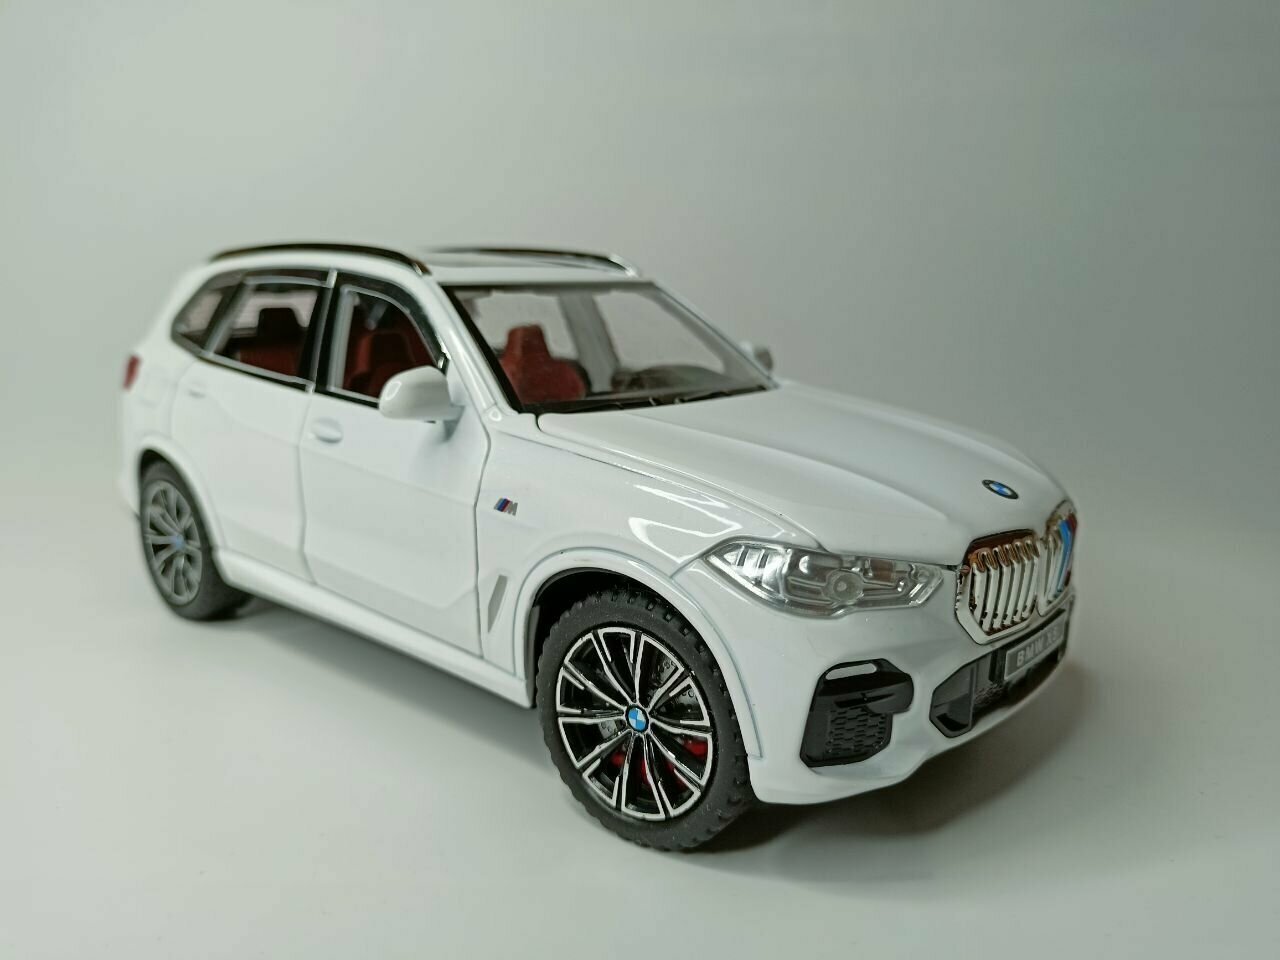 Модель автомобиля BMW X5 масштаб 1:24 коллекционная металлическая игрушка масштаб 1:24 белый